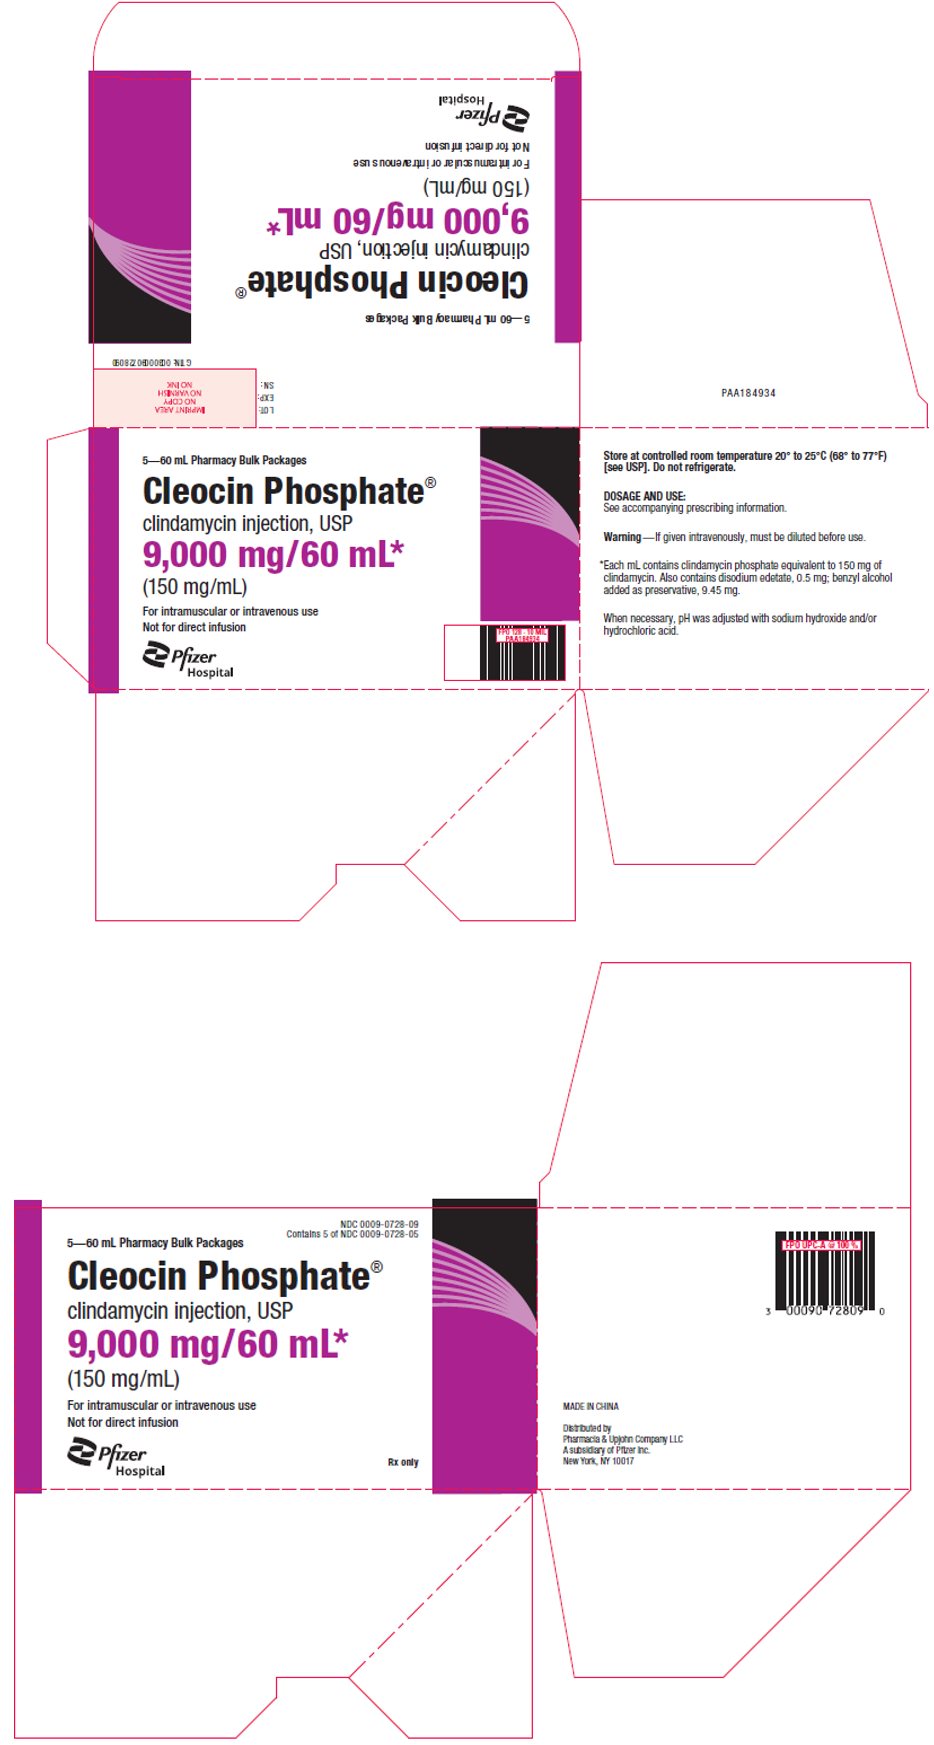 PRINCIPAL DISPLAY PANEL - 9,000 mg/60 mL Vial Bulk Carton